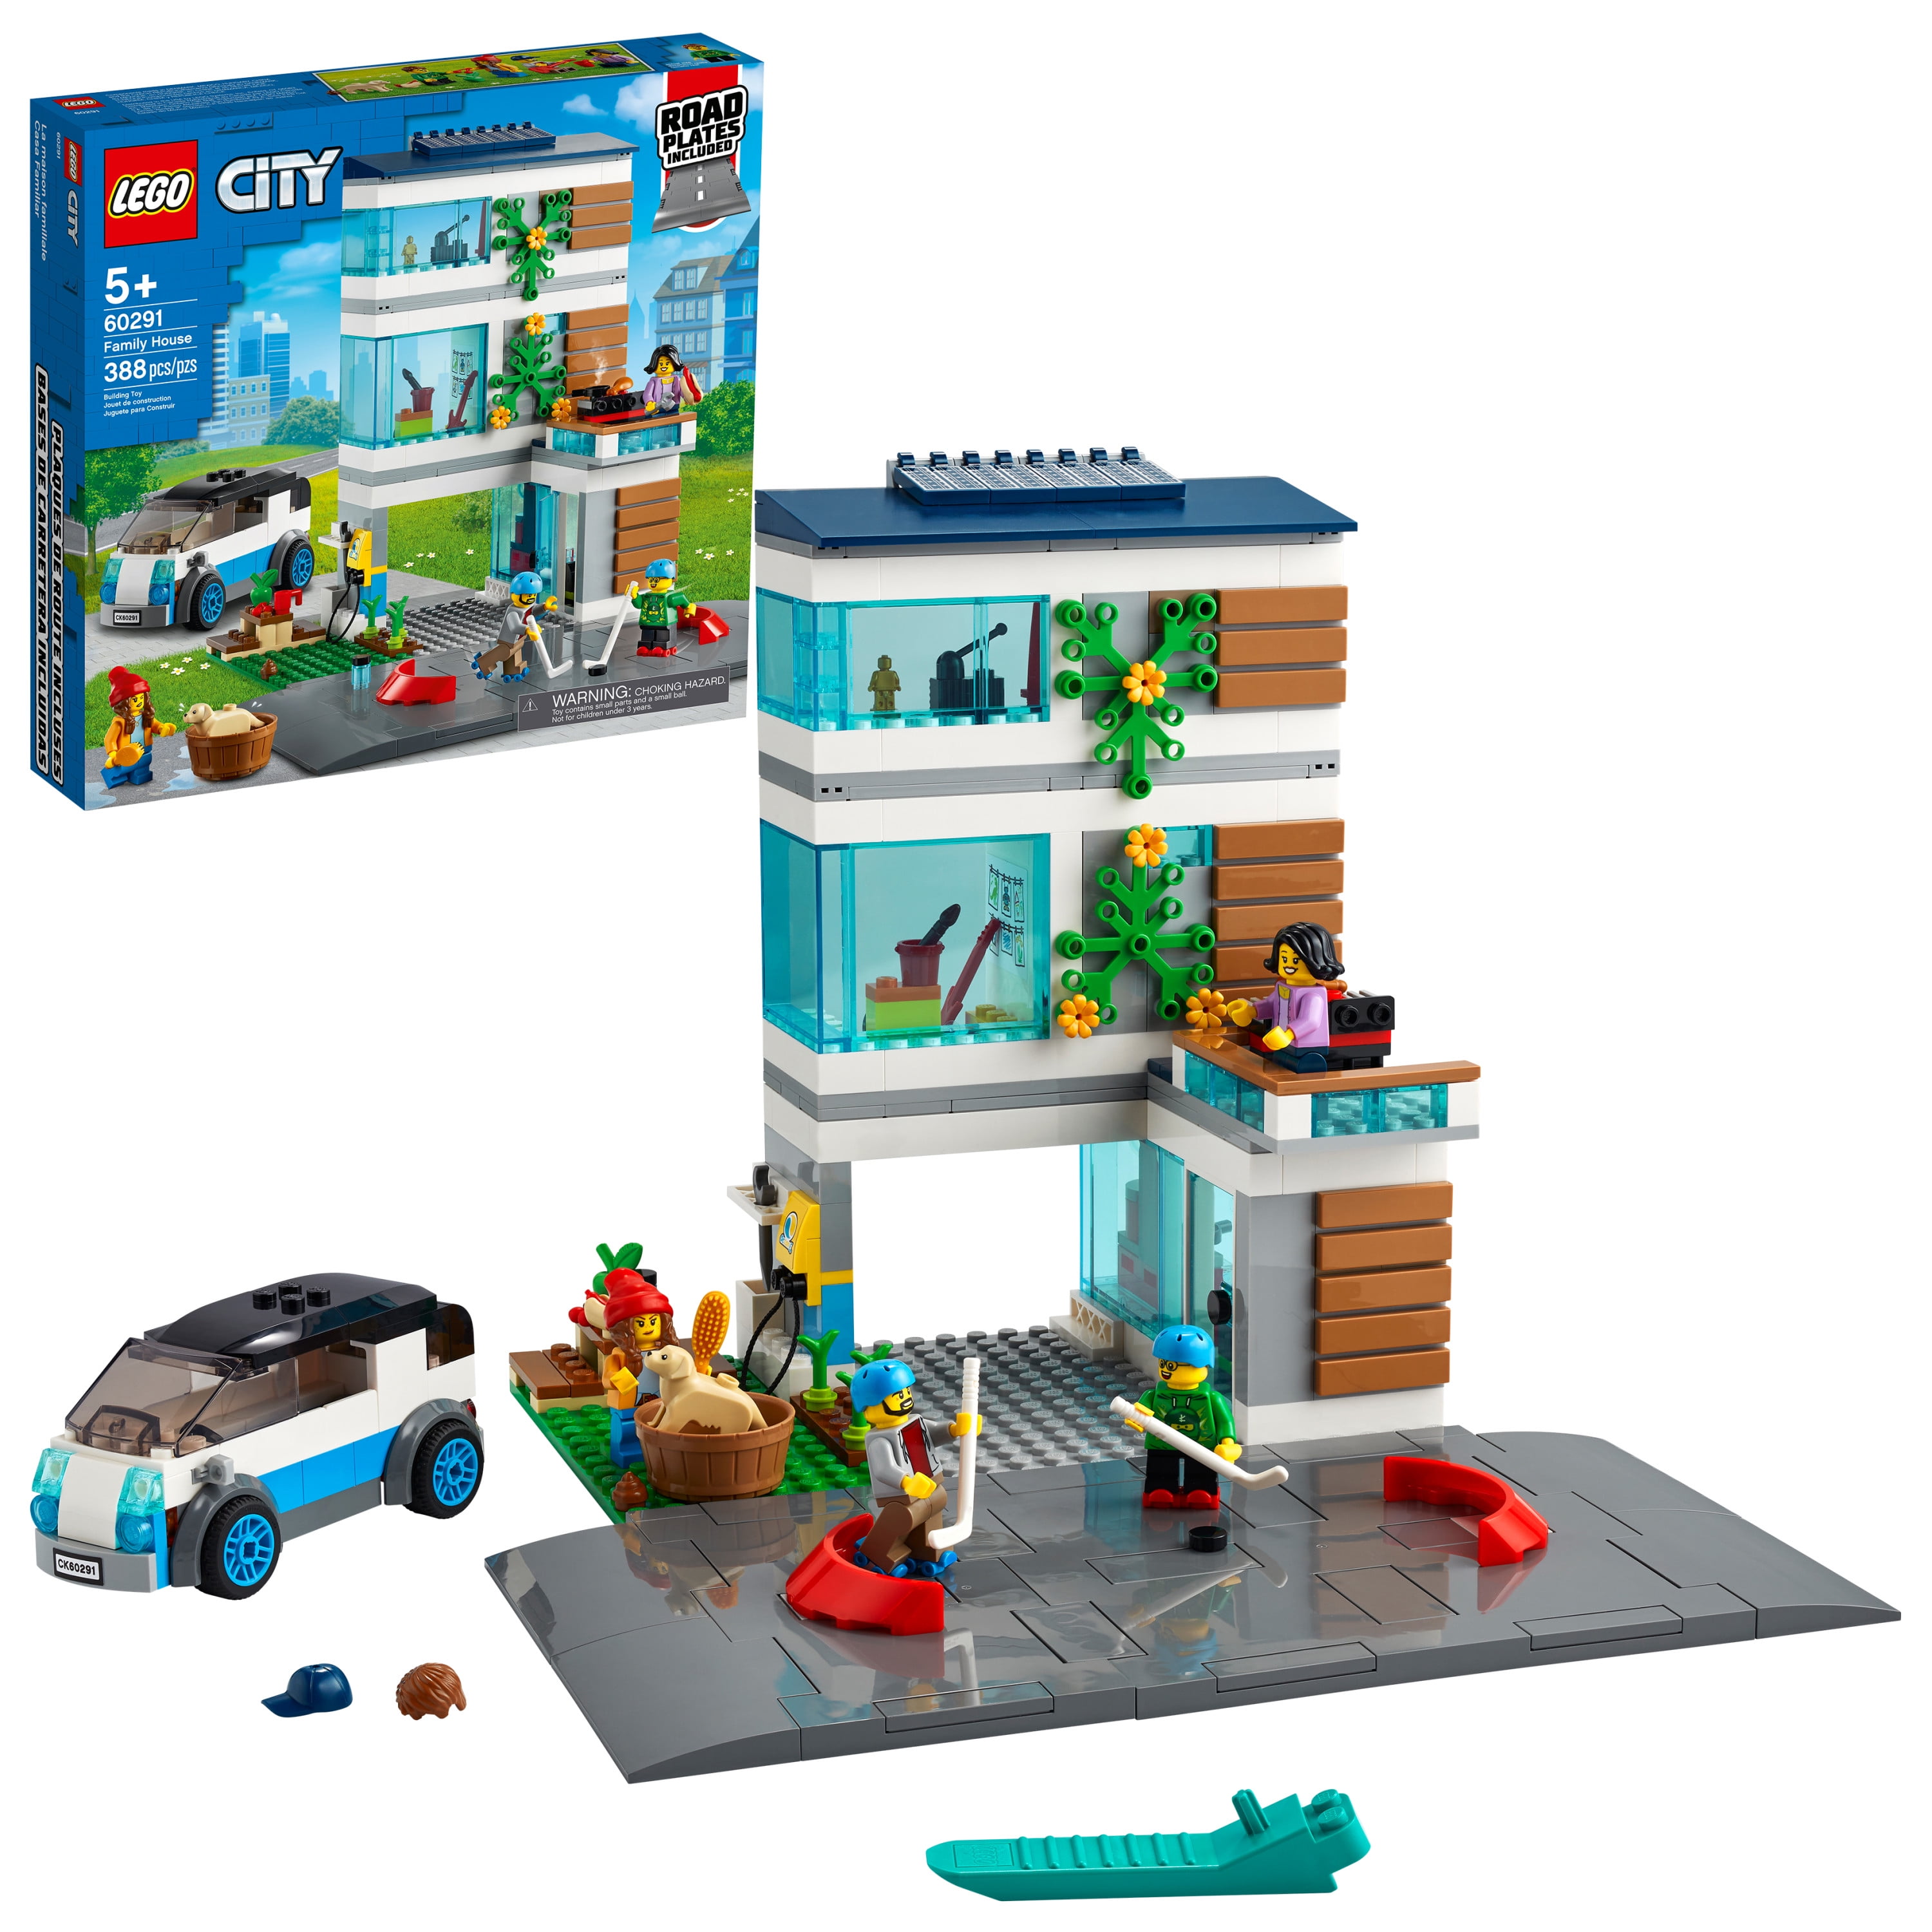 Main Square 60271 - LEGO® City Sets - LEGO.com for kids